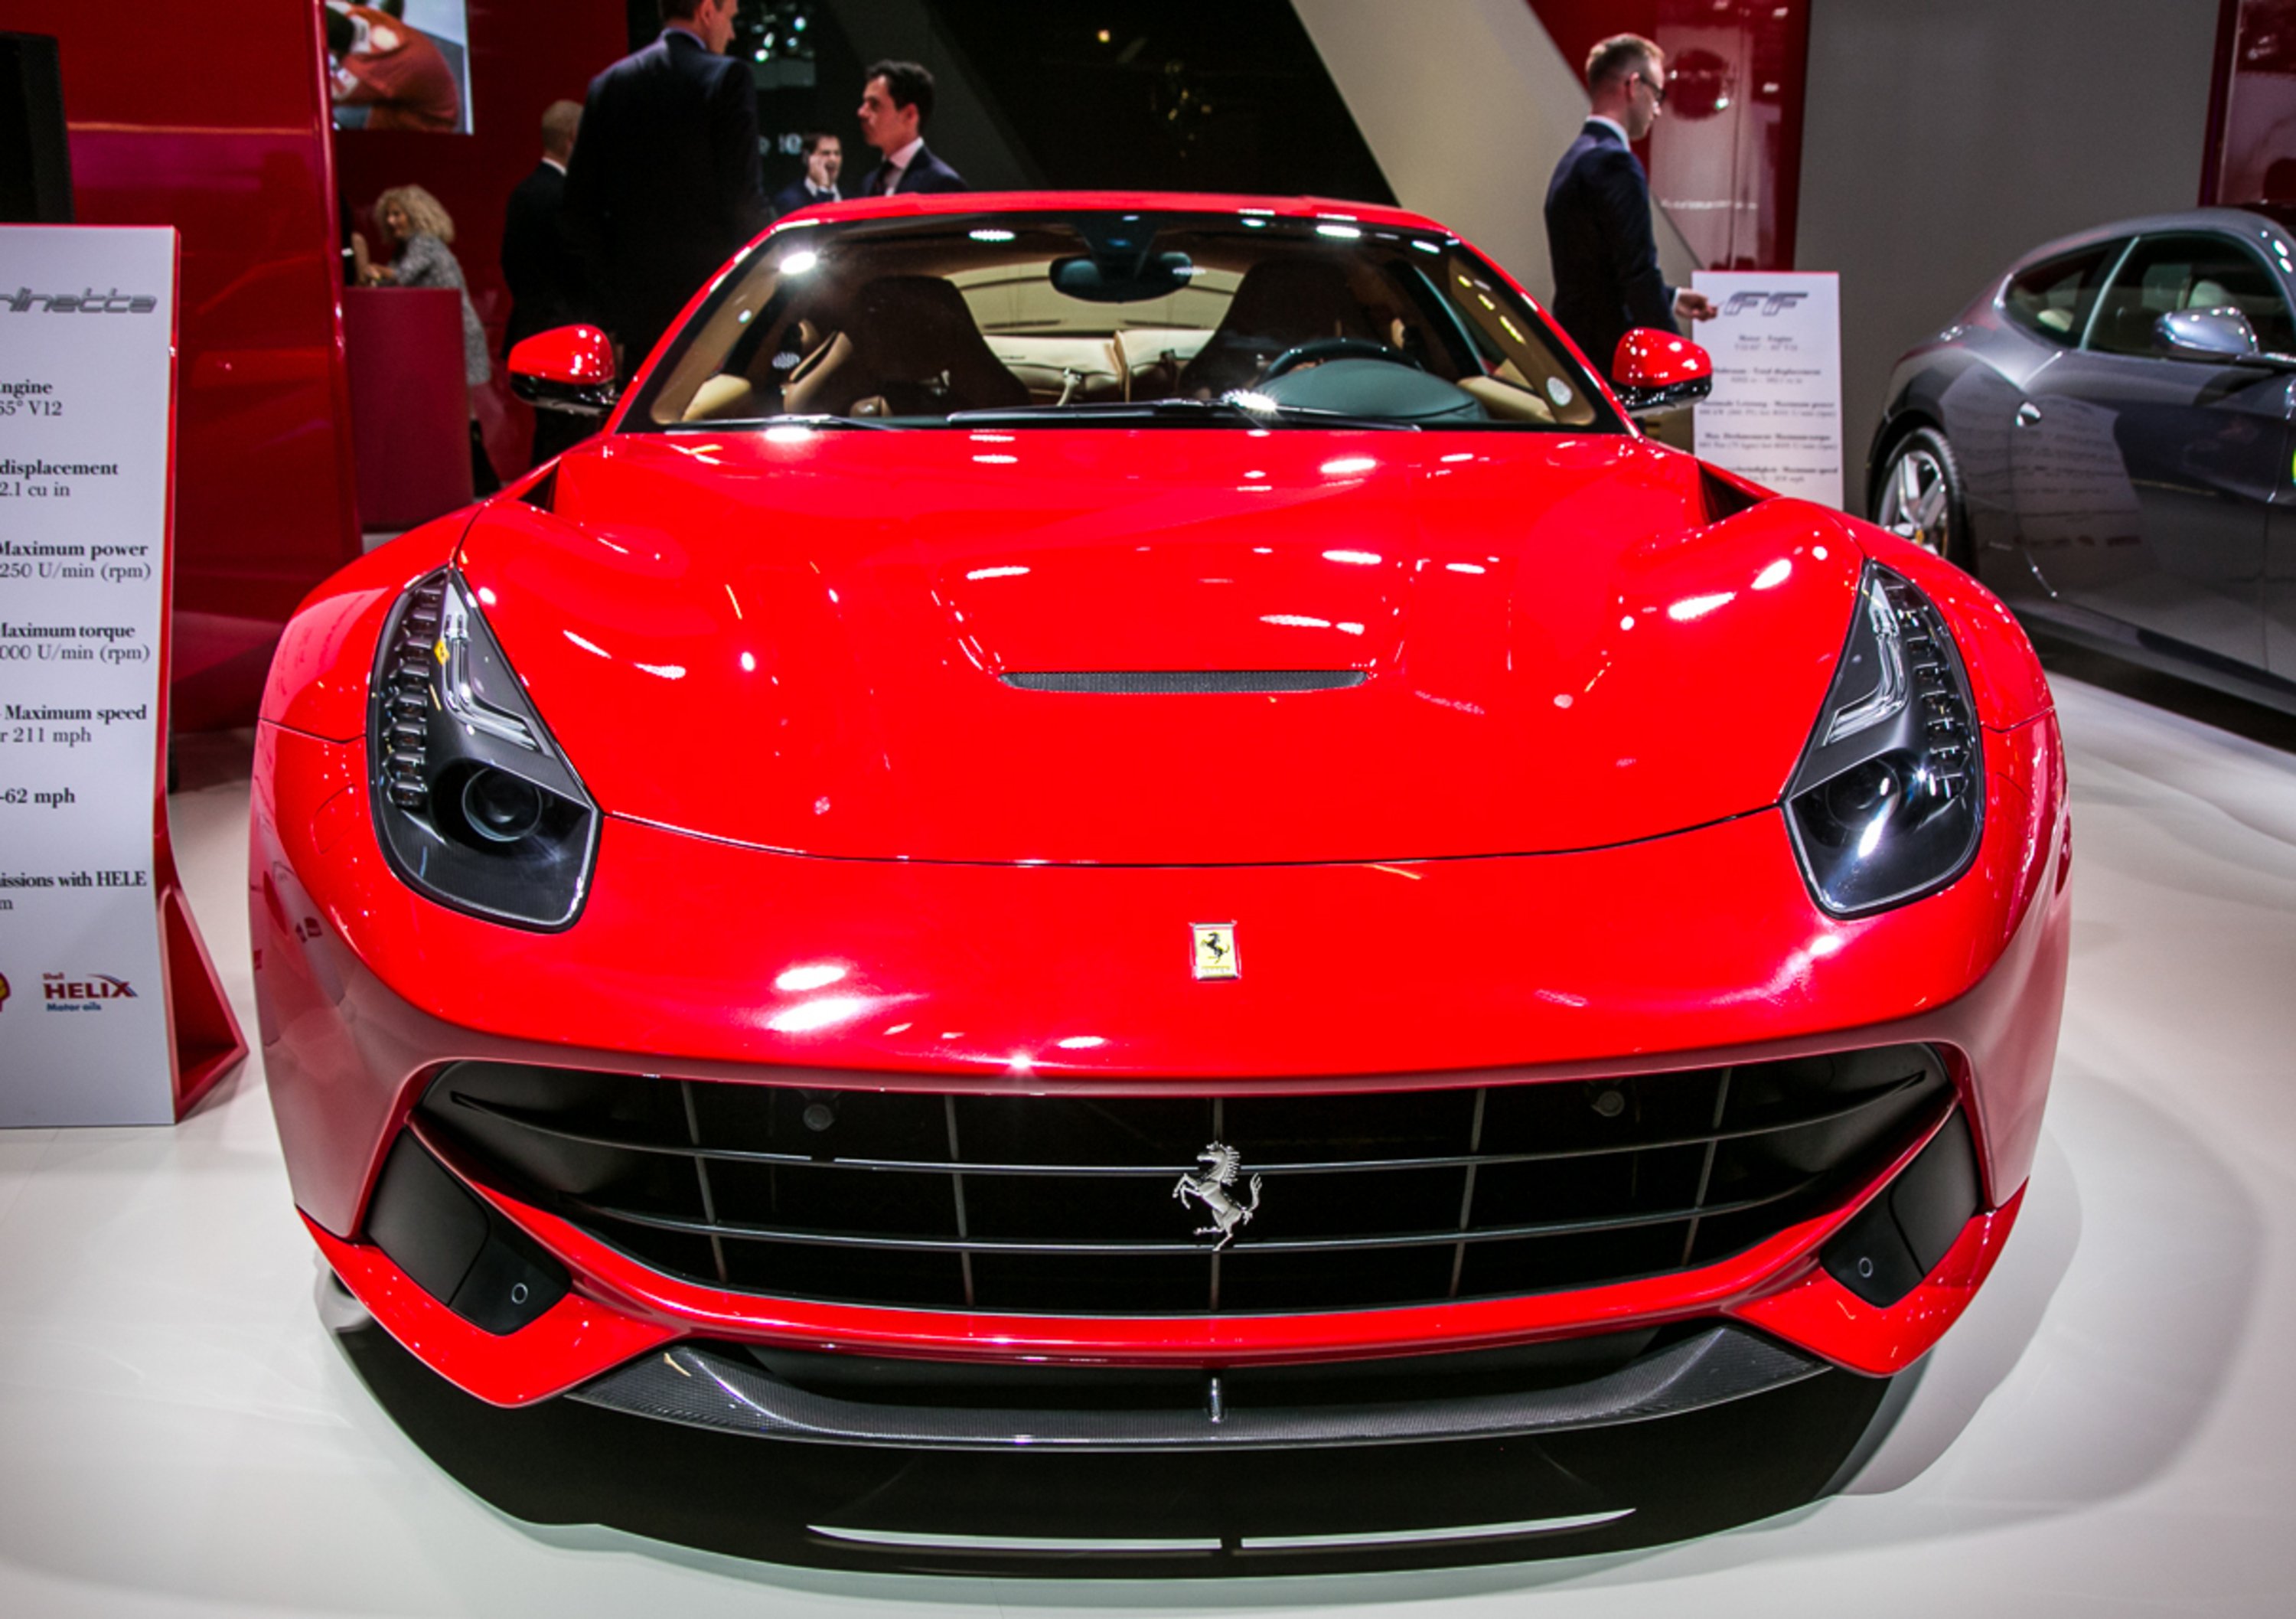 Ferrari, in Borsa con il simbolo &ldquo;RACE&rdquo;